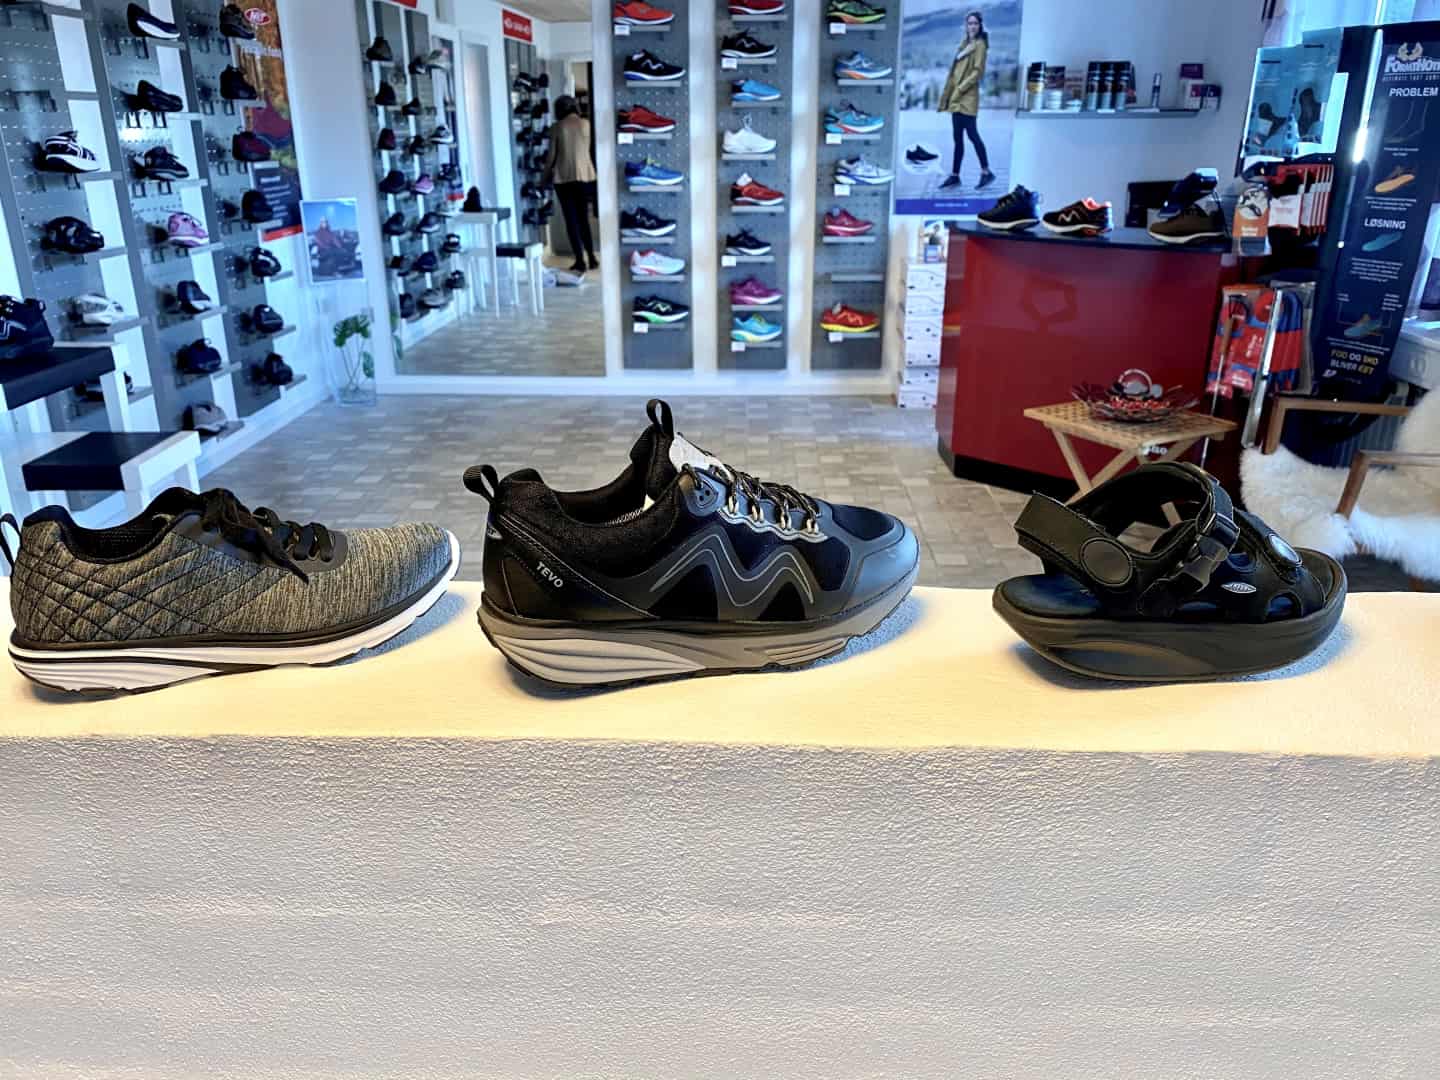 Vent et øjeblik Besøg bedsteforældre Afledning Per og Bodil elsker at sælge sko med indbygget fitnesscenter | ugeavisen.dk